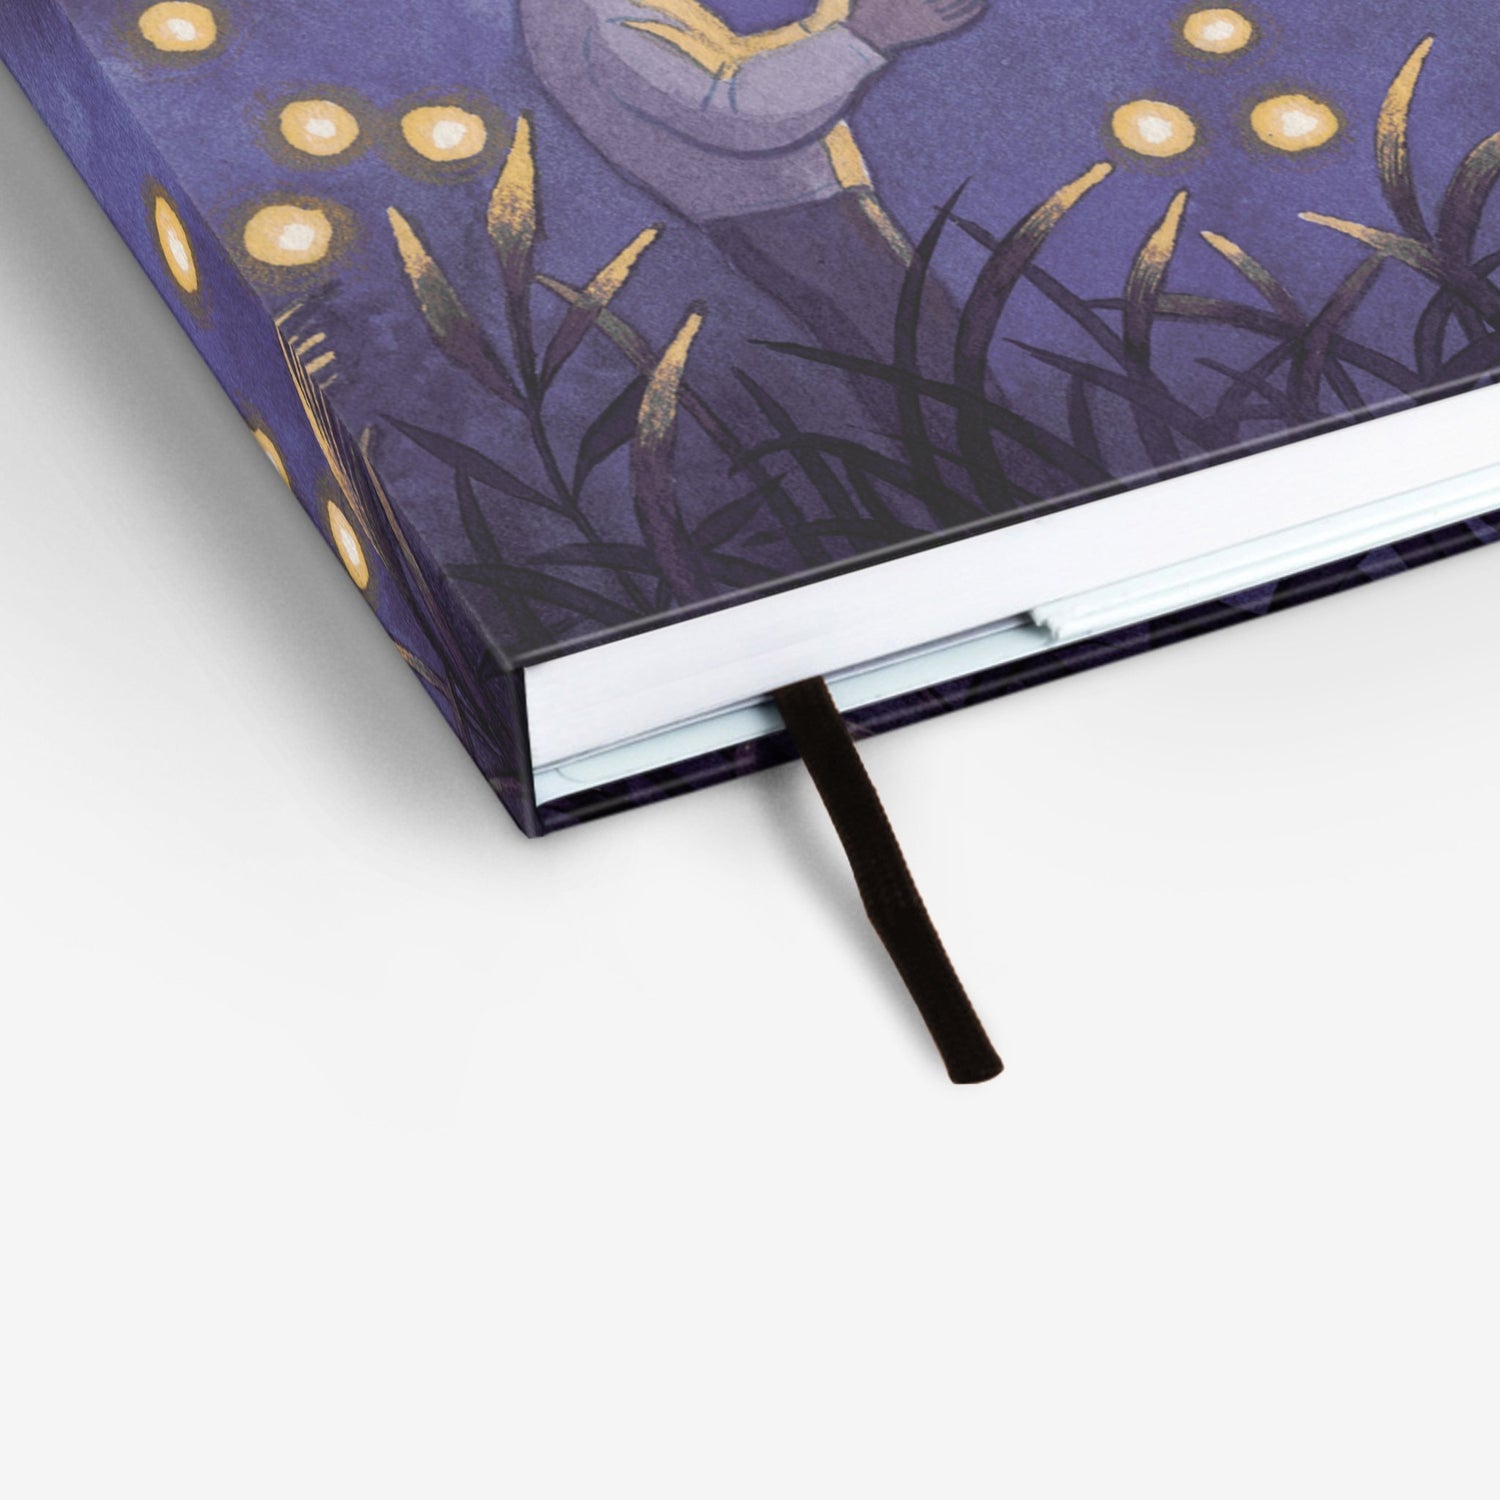 Fireflies Threadbound Notebook